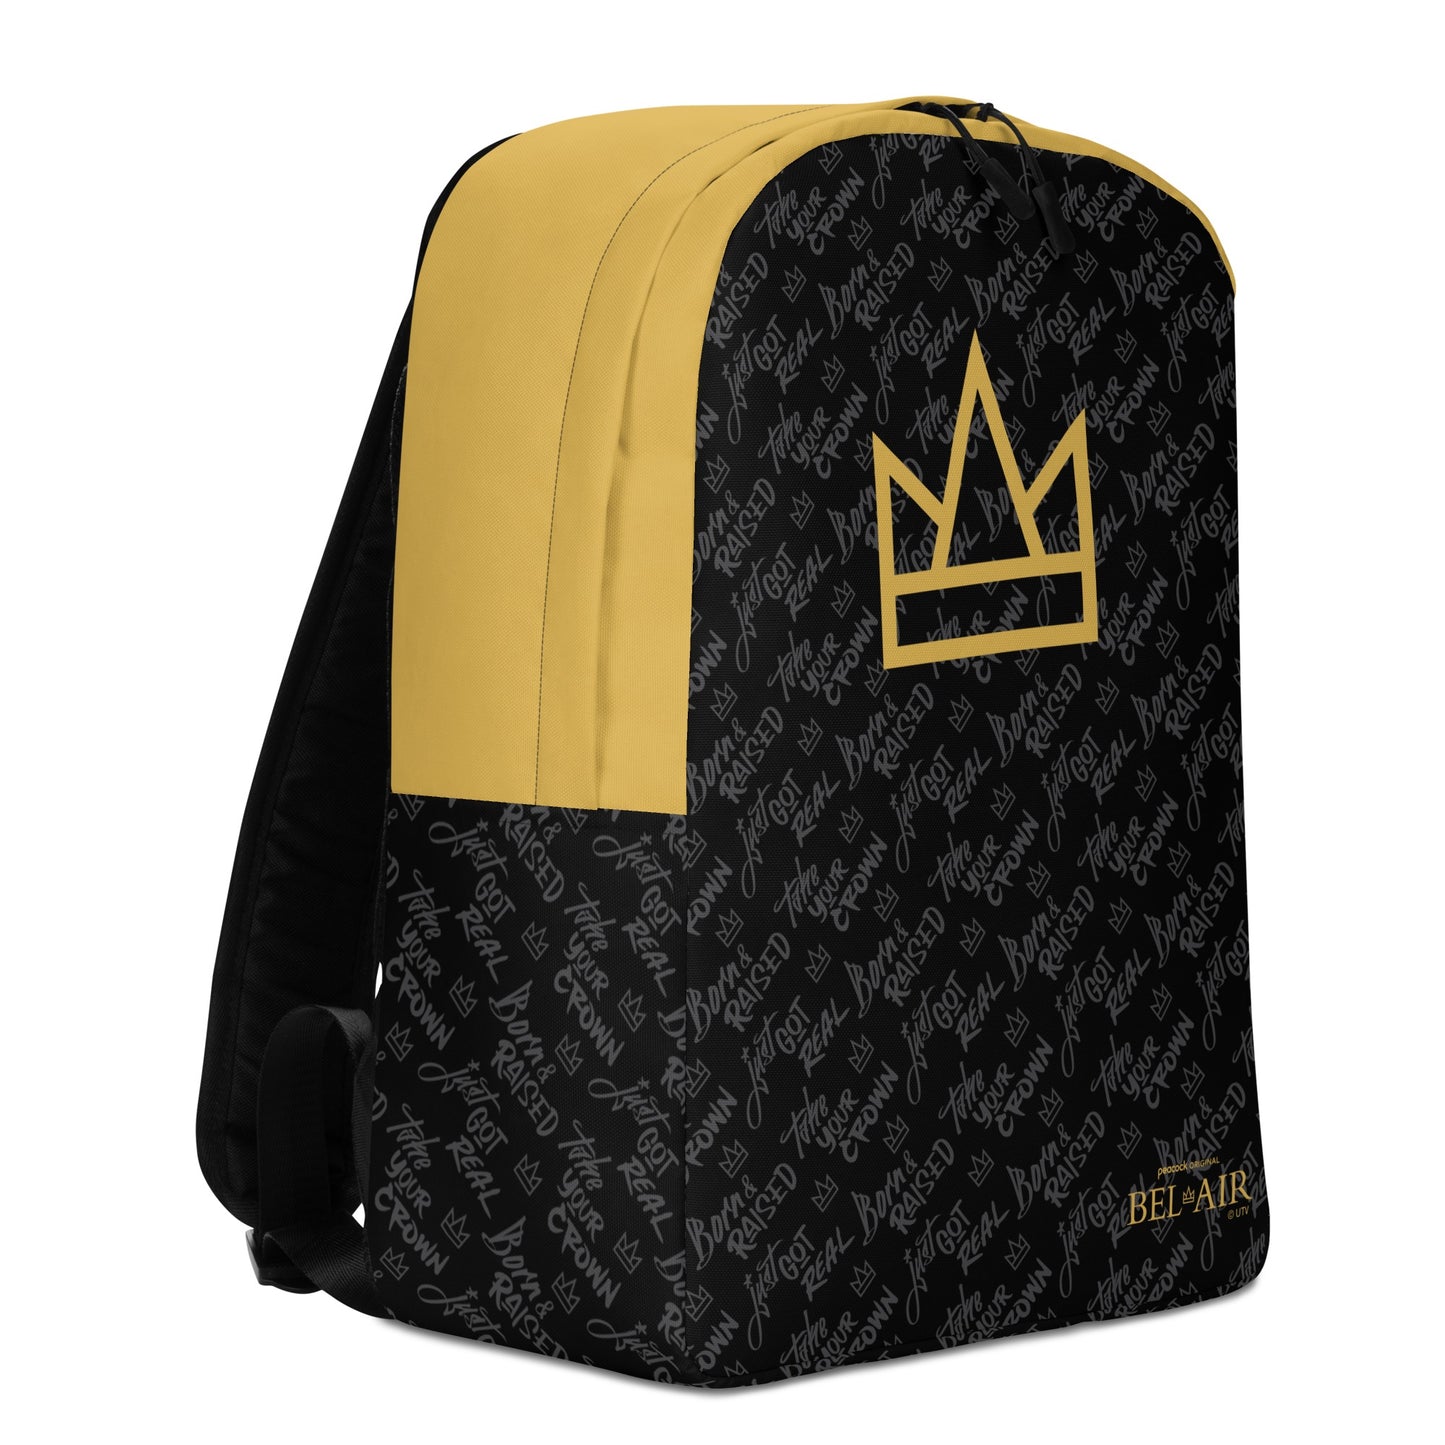 Bel-Air Crown & Pattern Backpack